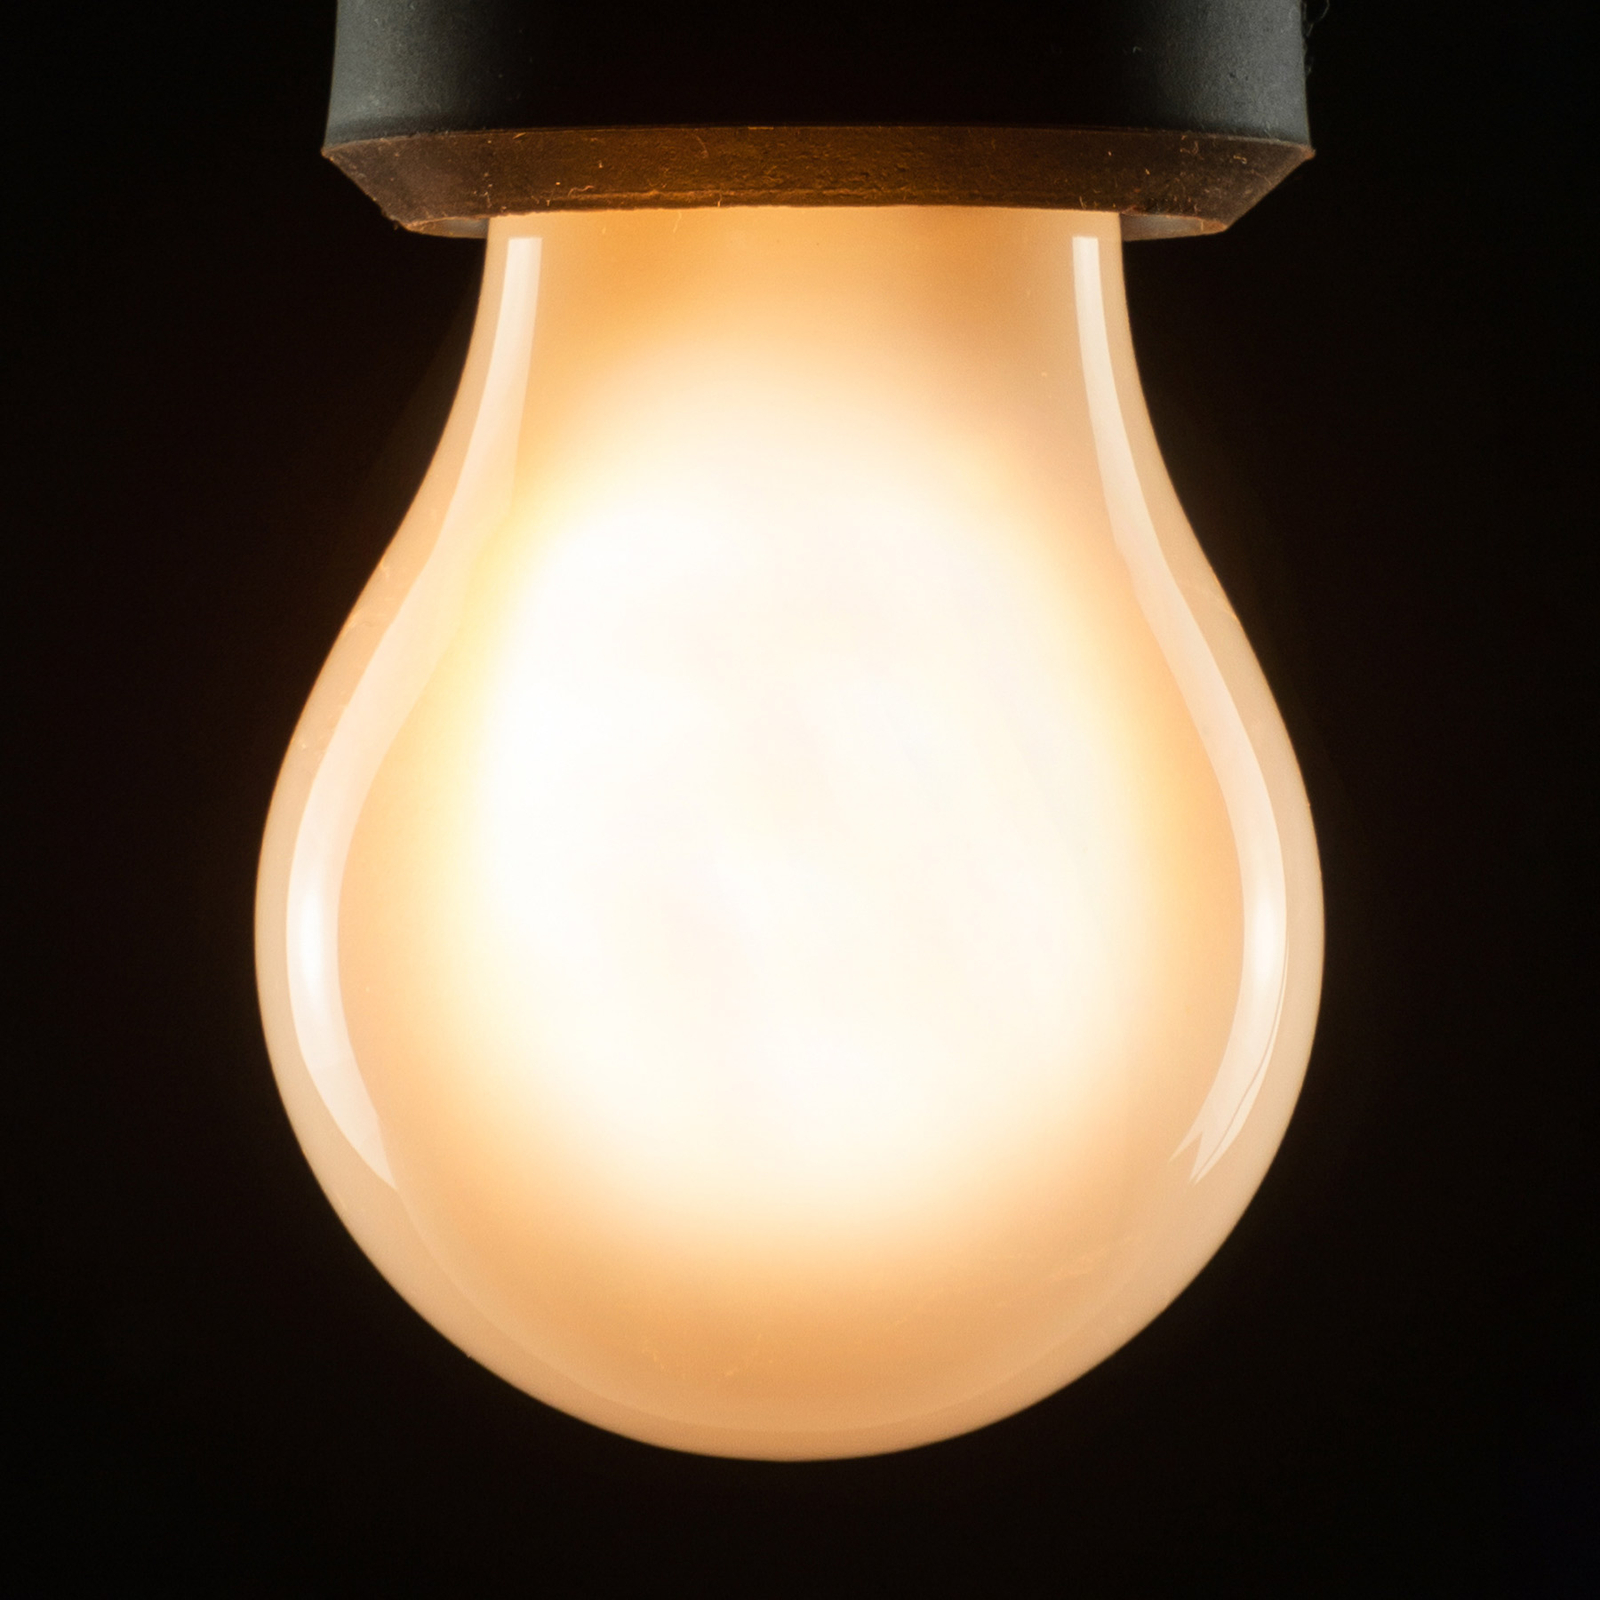 SEGULA LED bulb A15 E27 3W 2,200K dimmable matt